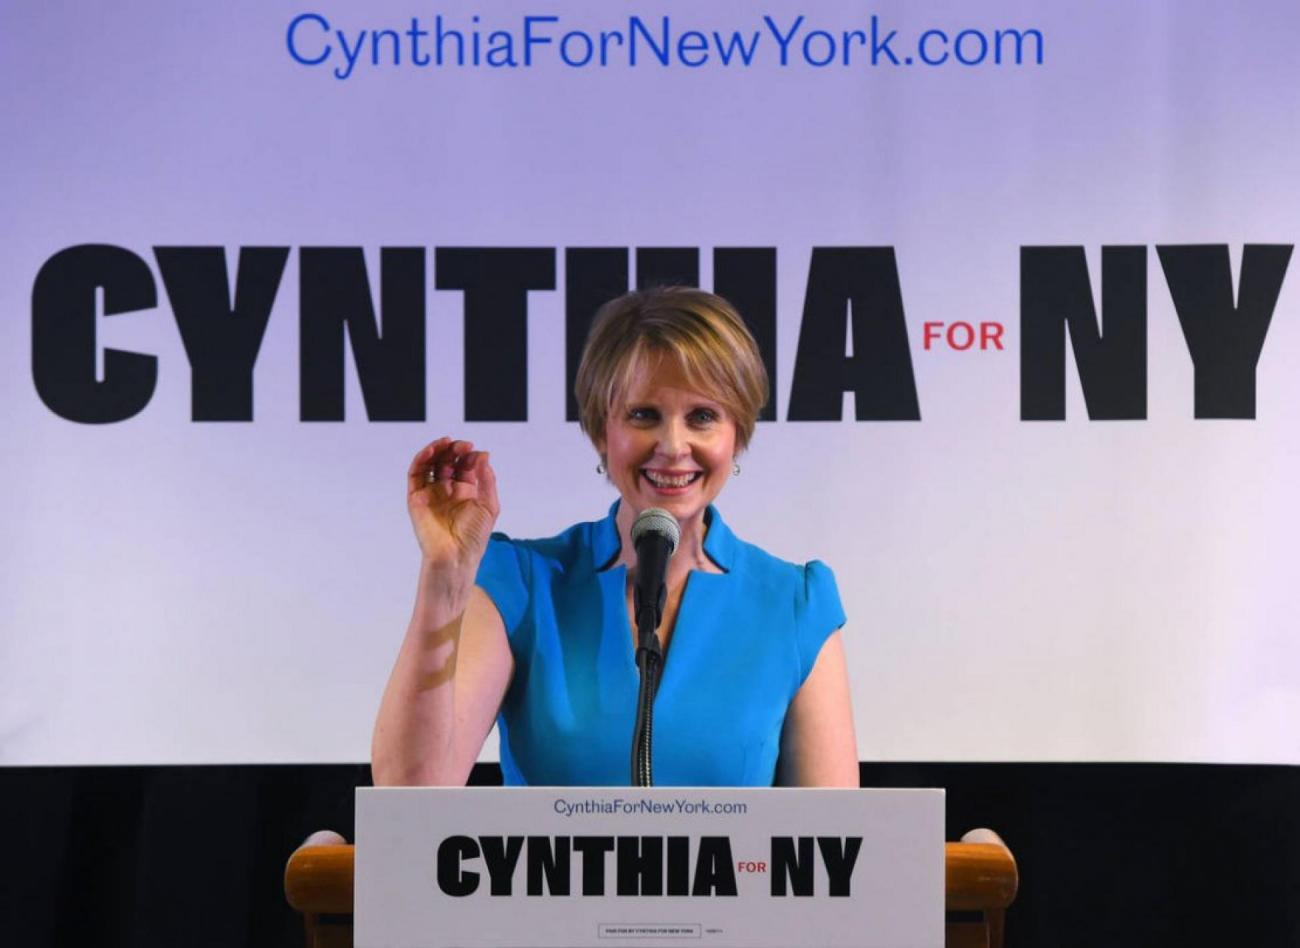 Lactrice Cynthia Nixon En Outsider Face Au Gouverneur De New York Pour La Primaire Francesoir 2104